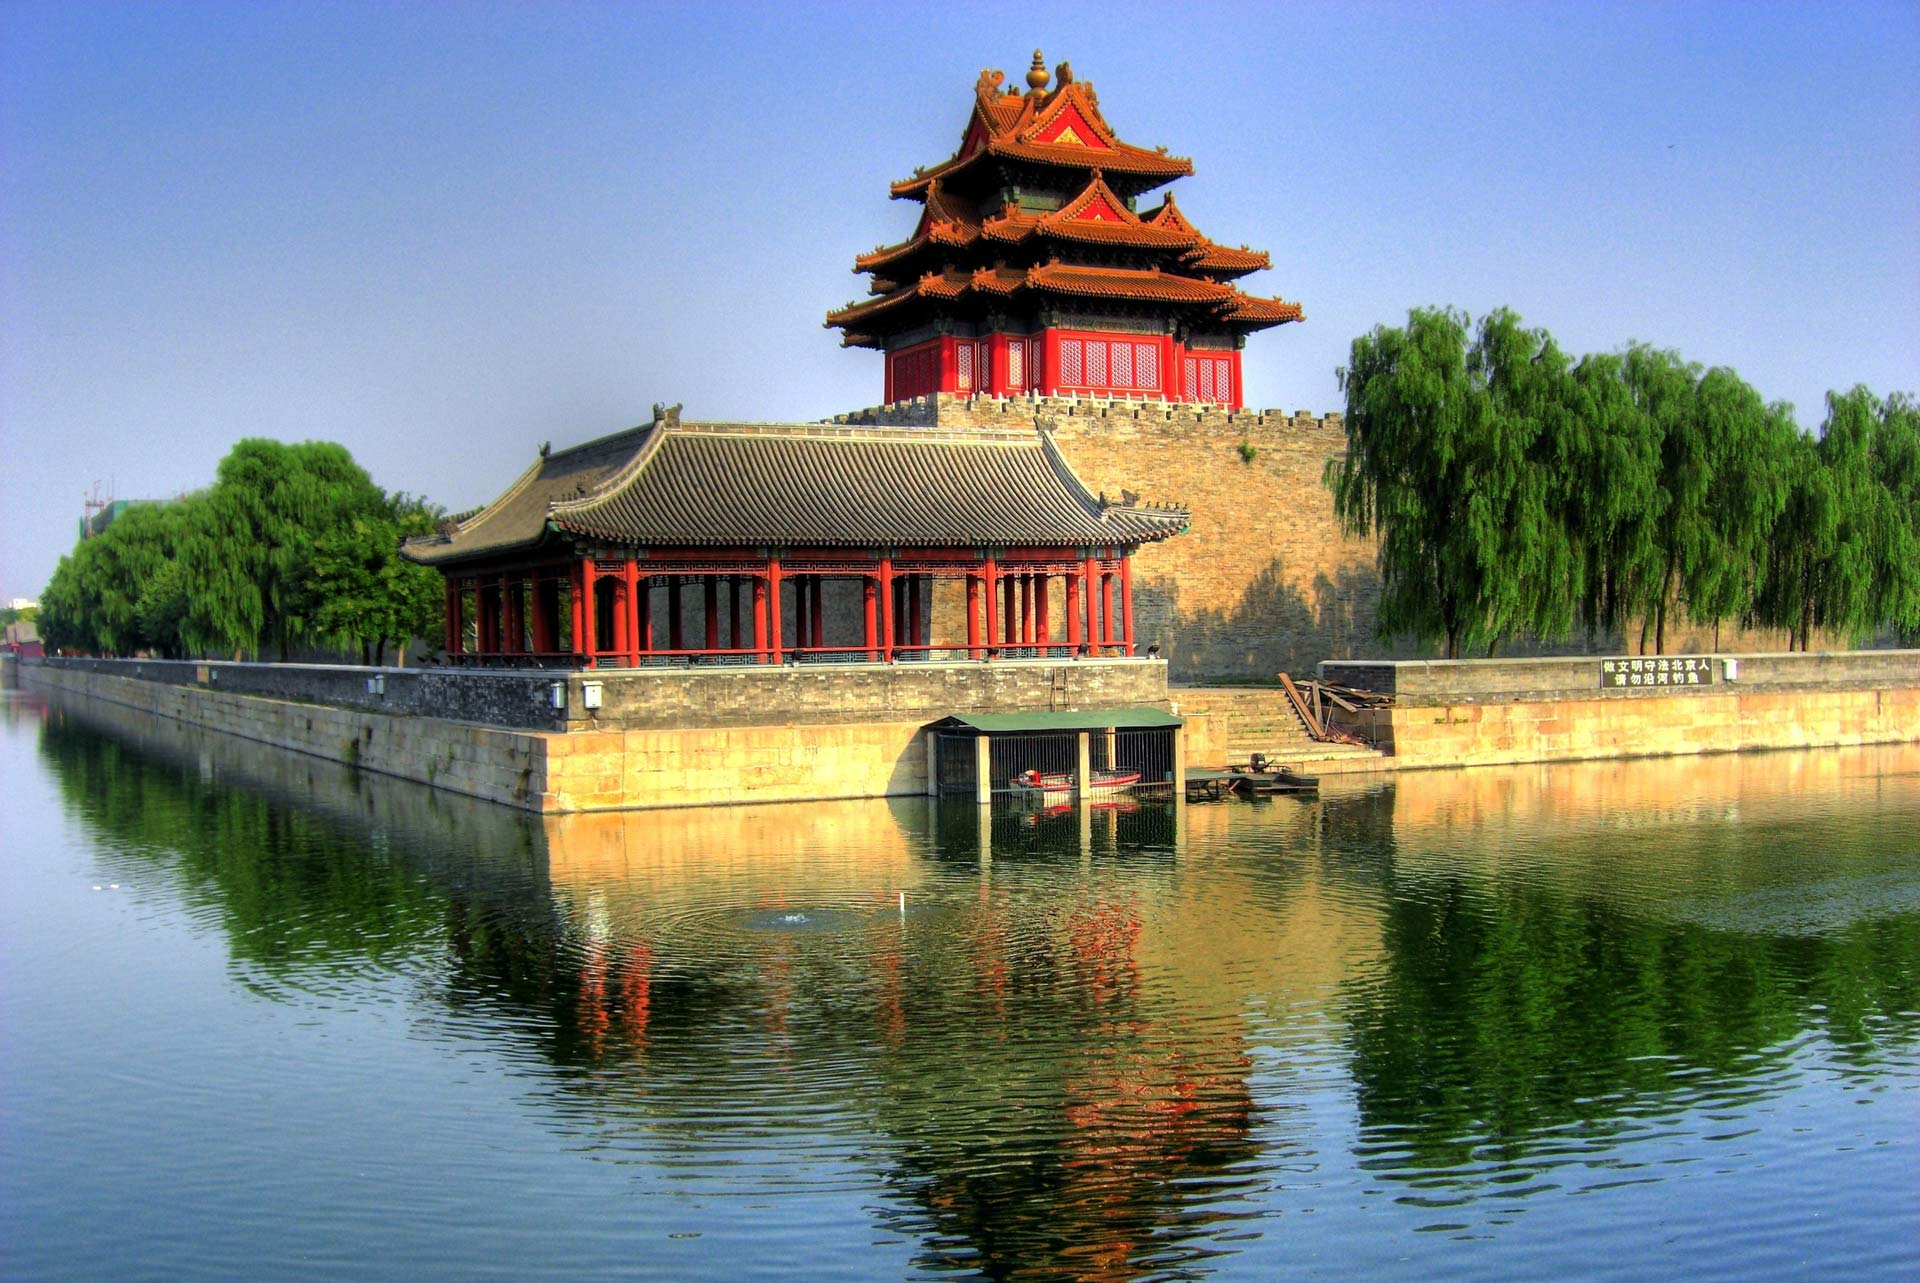 Watchtower of Forbidden city in Beijing